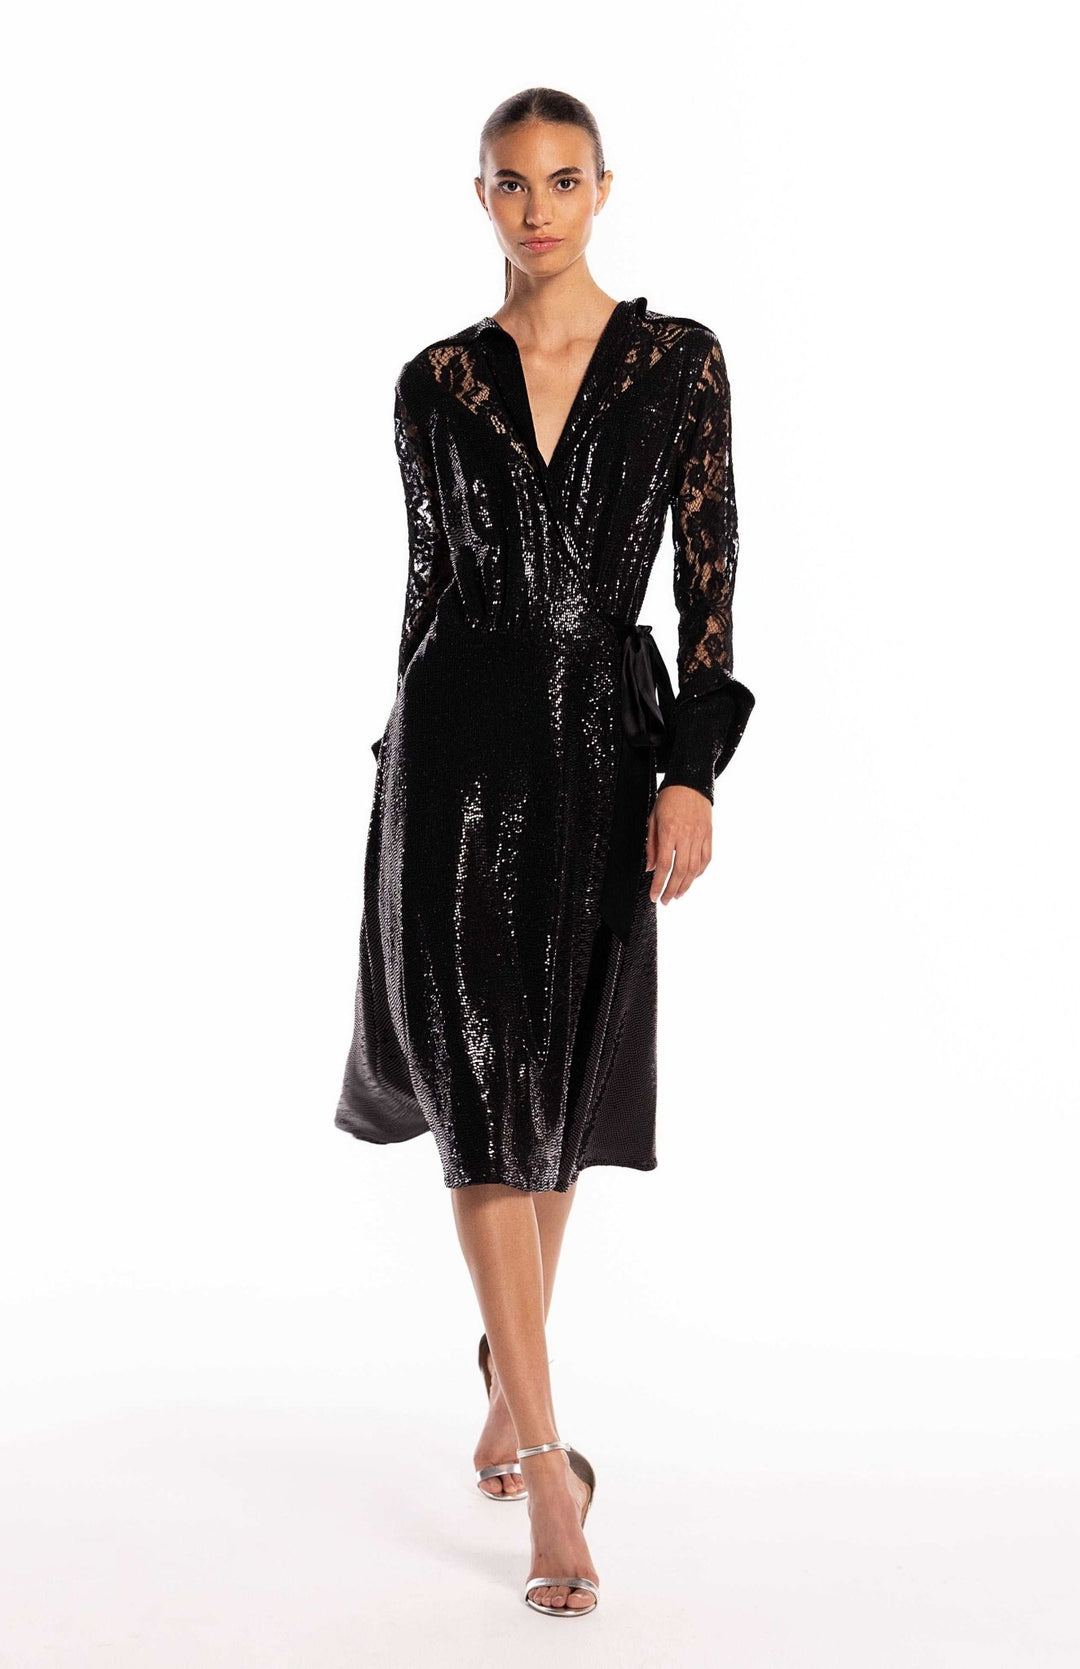  elegant black sequin cocktail dress